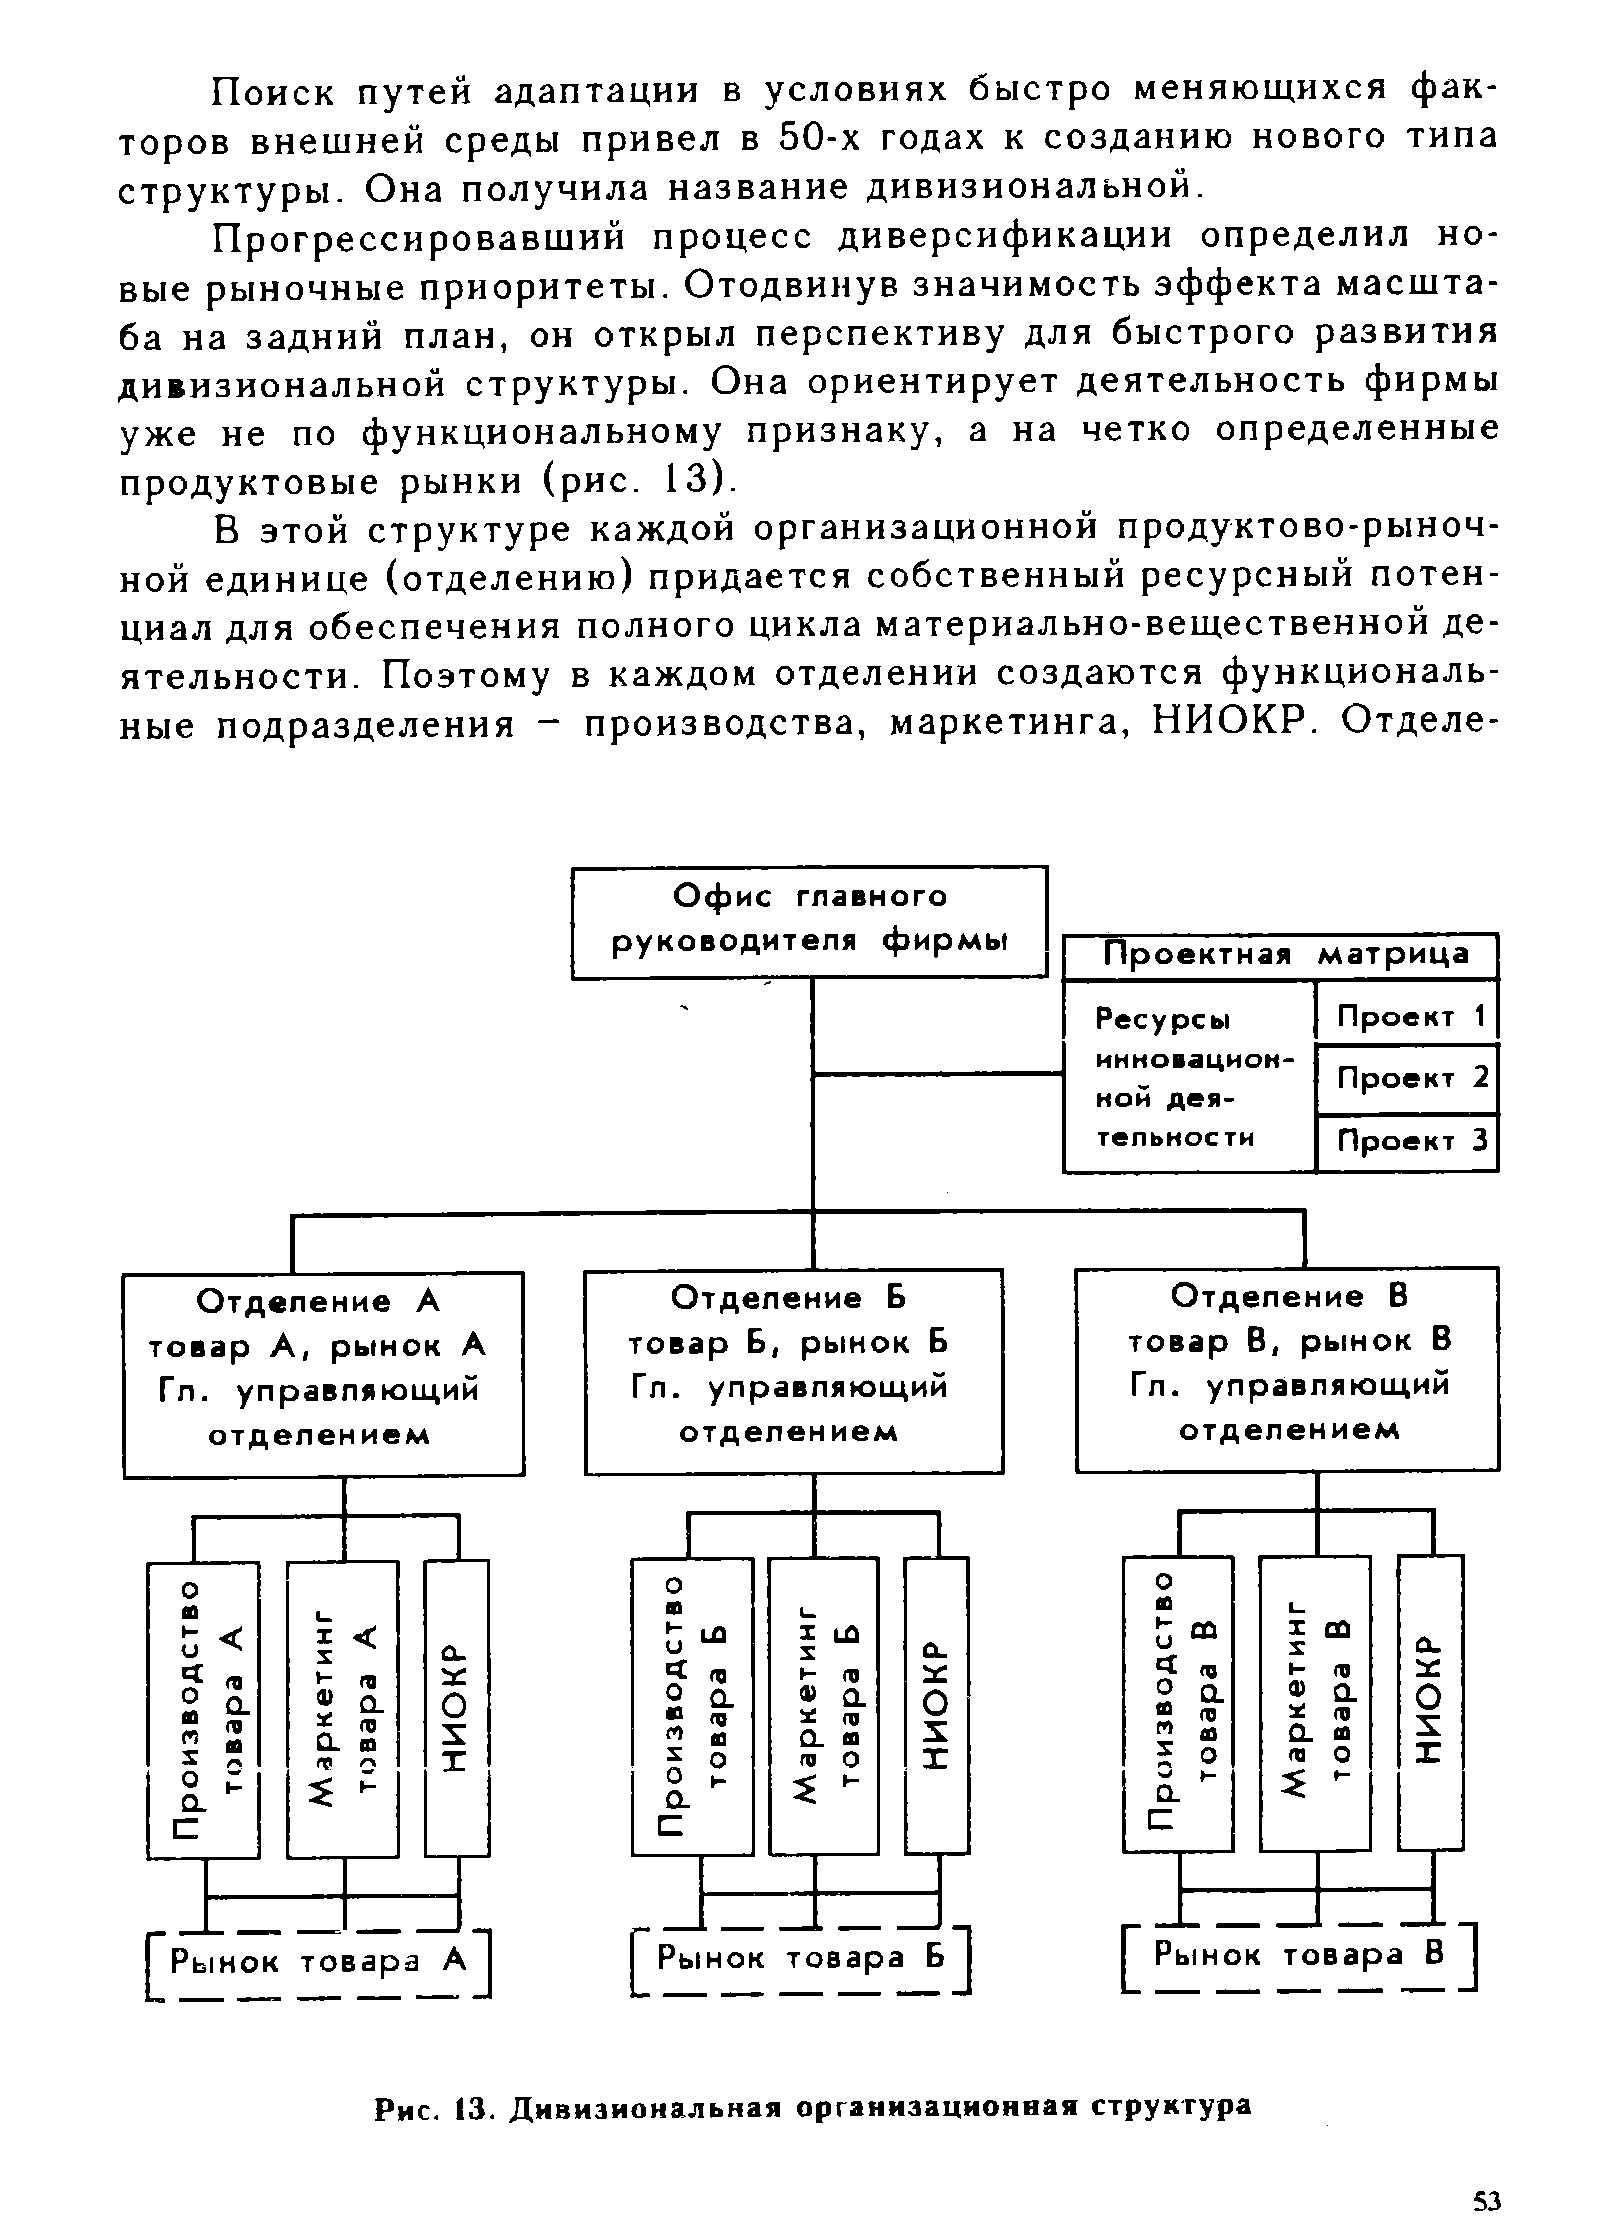 Рис. 13. Дивизиональная организационная структура
